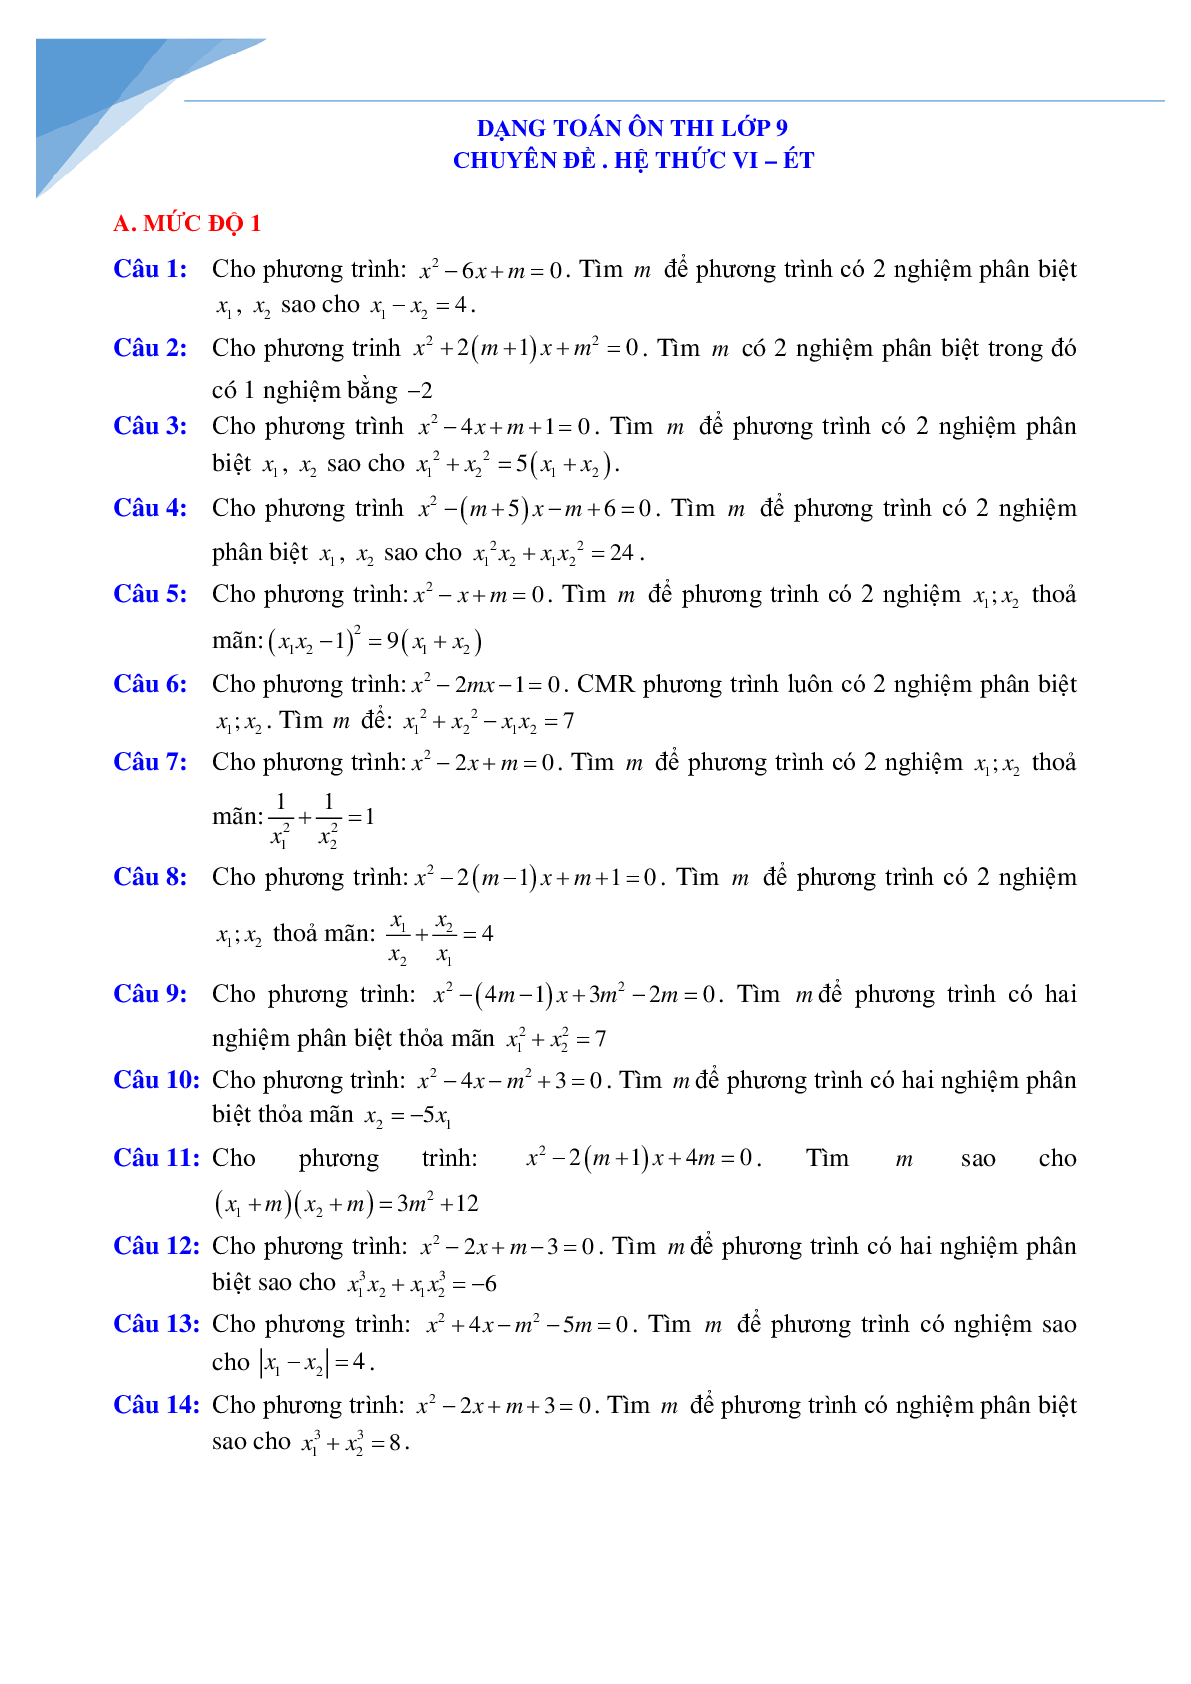 Chuyên đề vi-et luyện thi vào lớp 10 môn toán (trang 1)